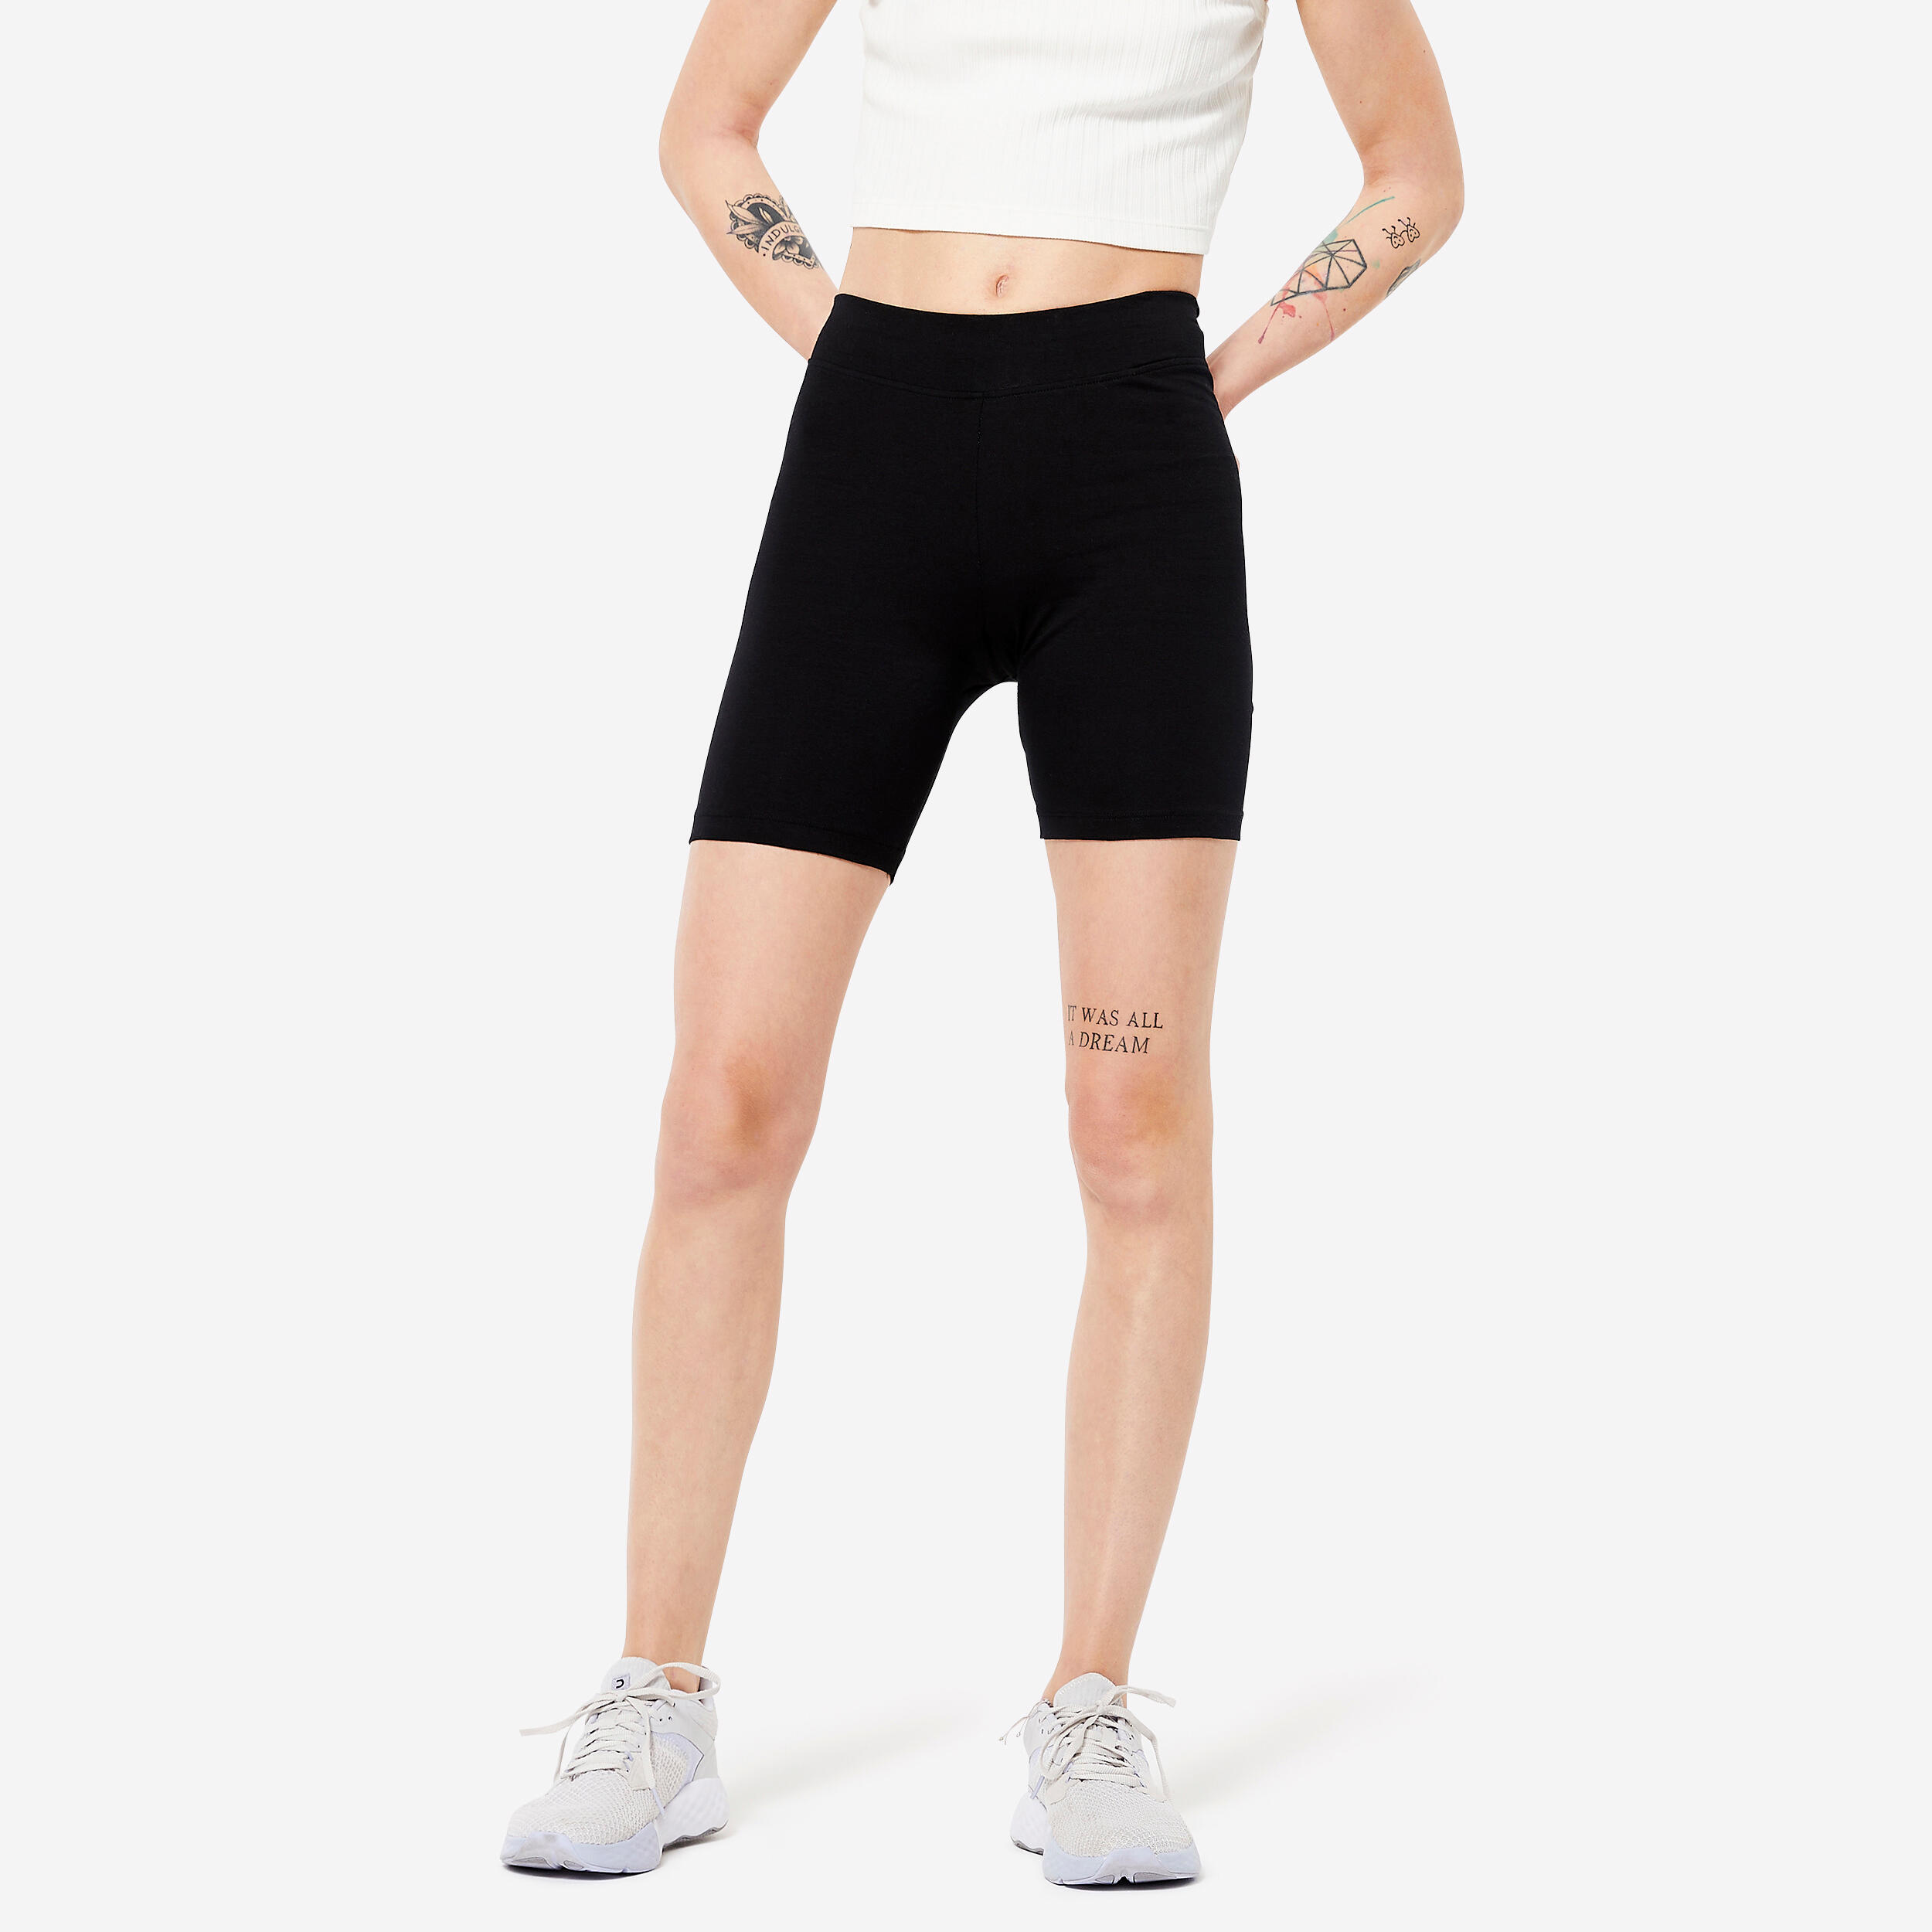 Dri-fit Shorts/Pants for Women — fencing parents